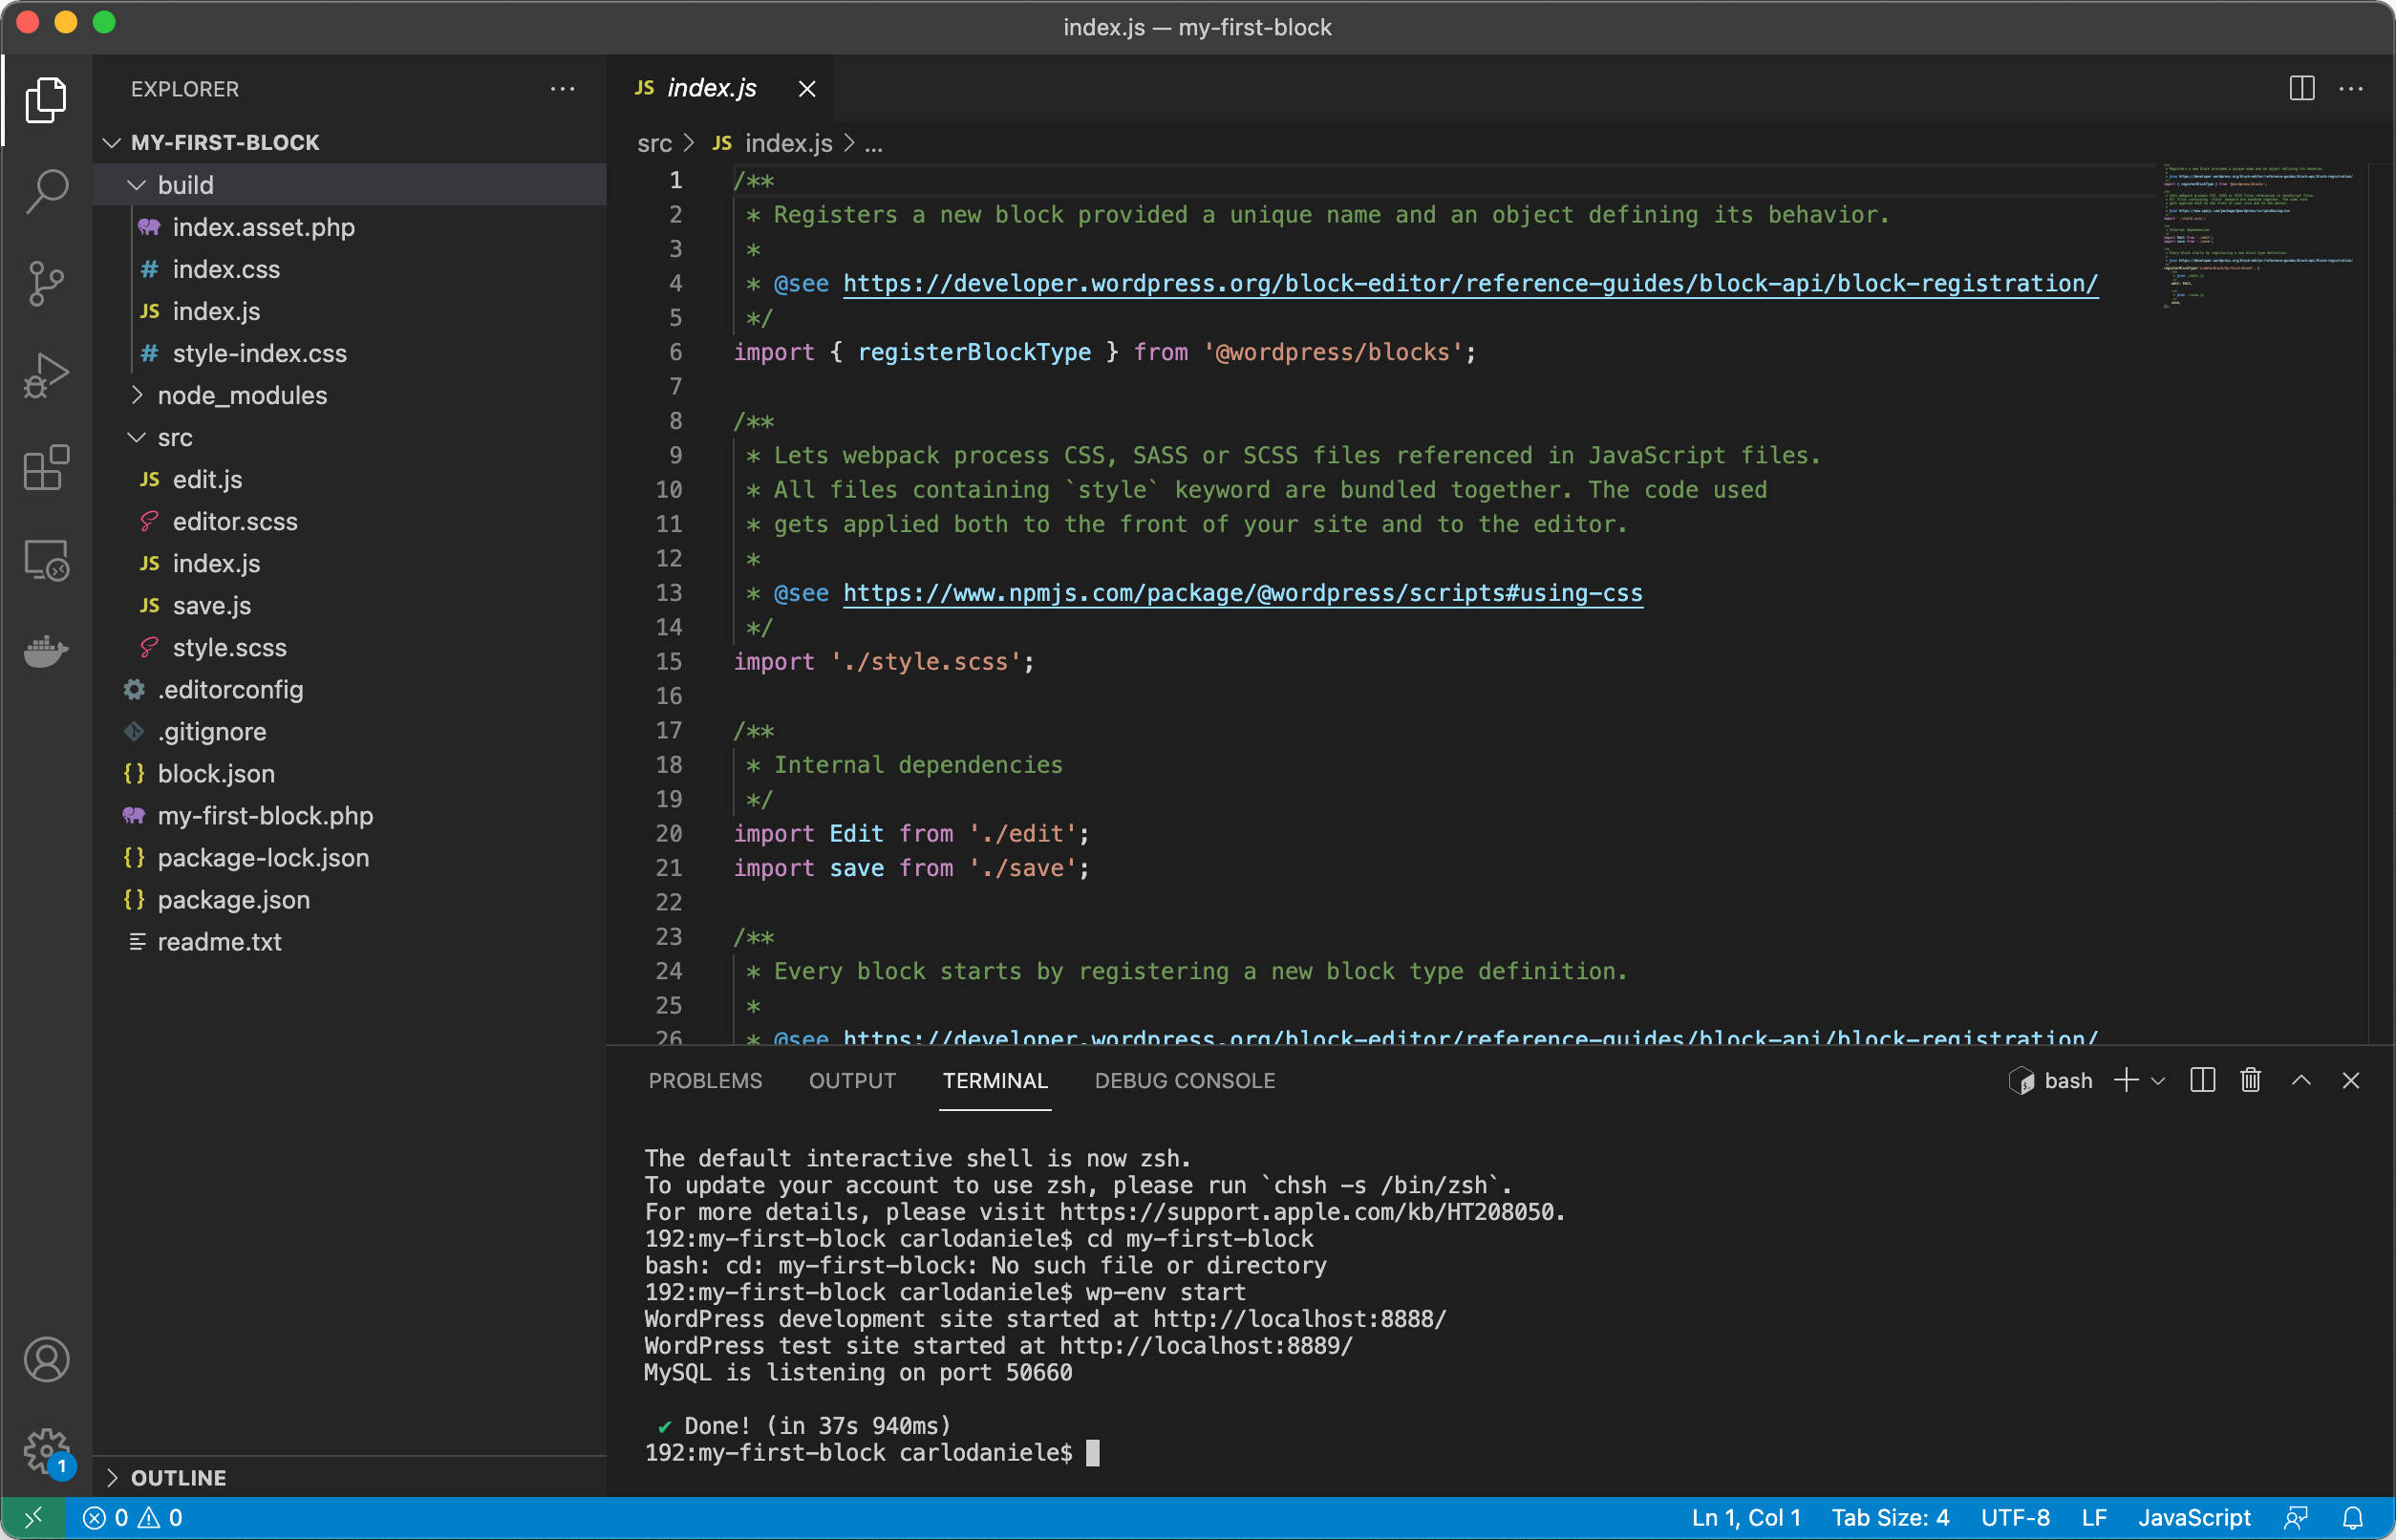 Kørsel af kommandoer fra Visual Studio Code Terminal.